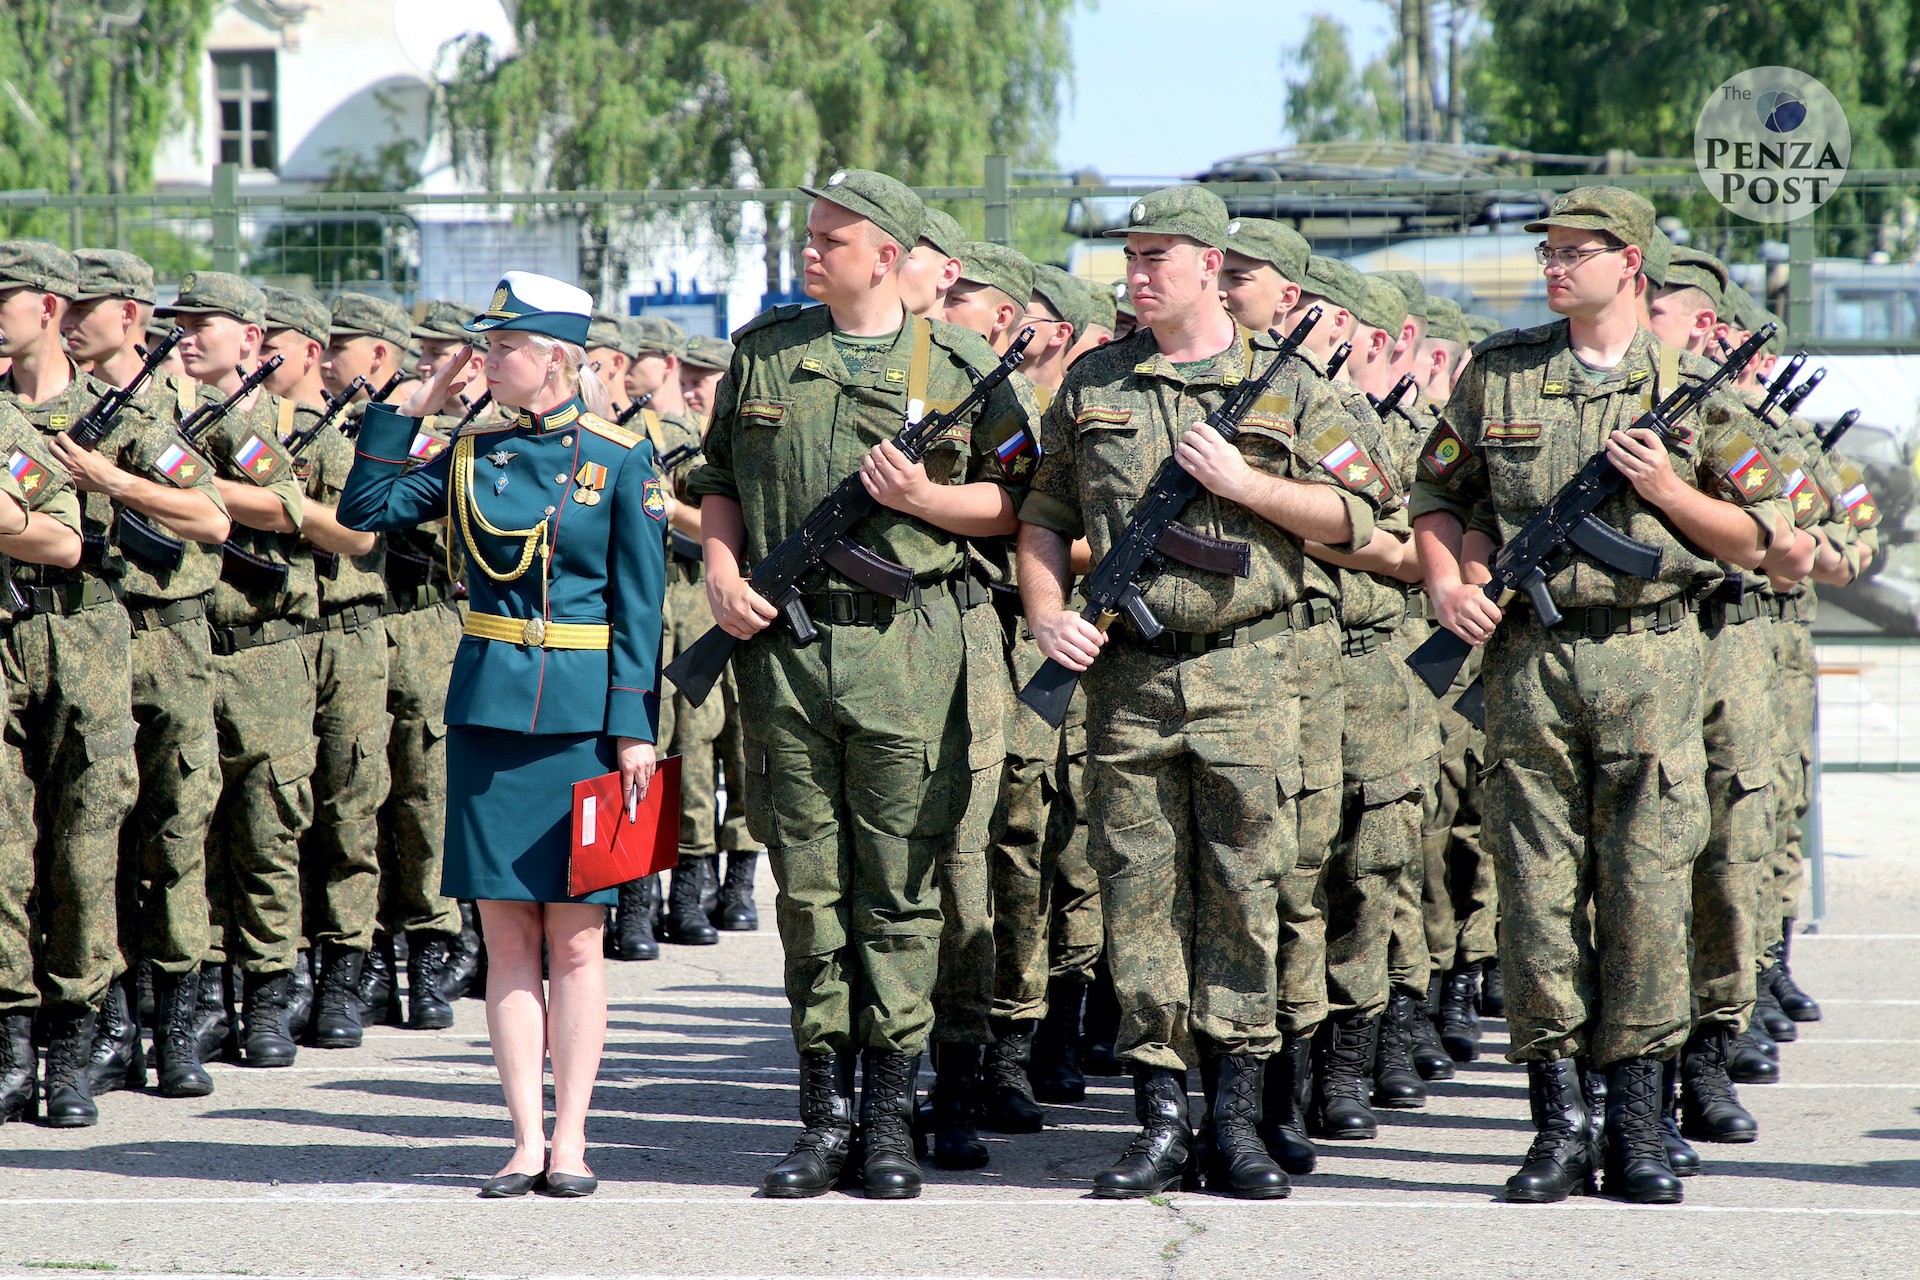 Студенты ПГУ прибыли домой с военных сборов в Ульяновске. Зарисовка трогательной встречи на вокзале Пенза-1